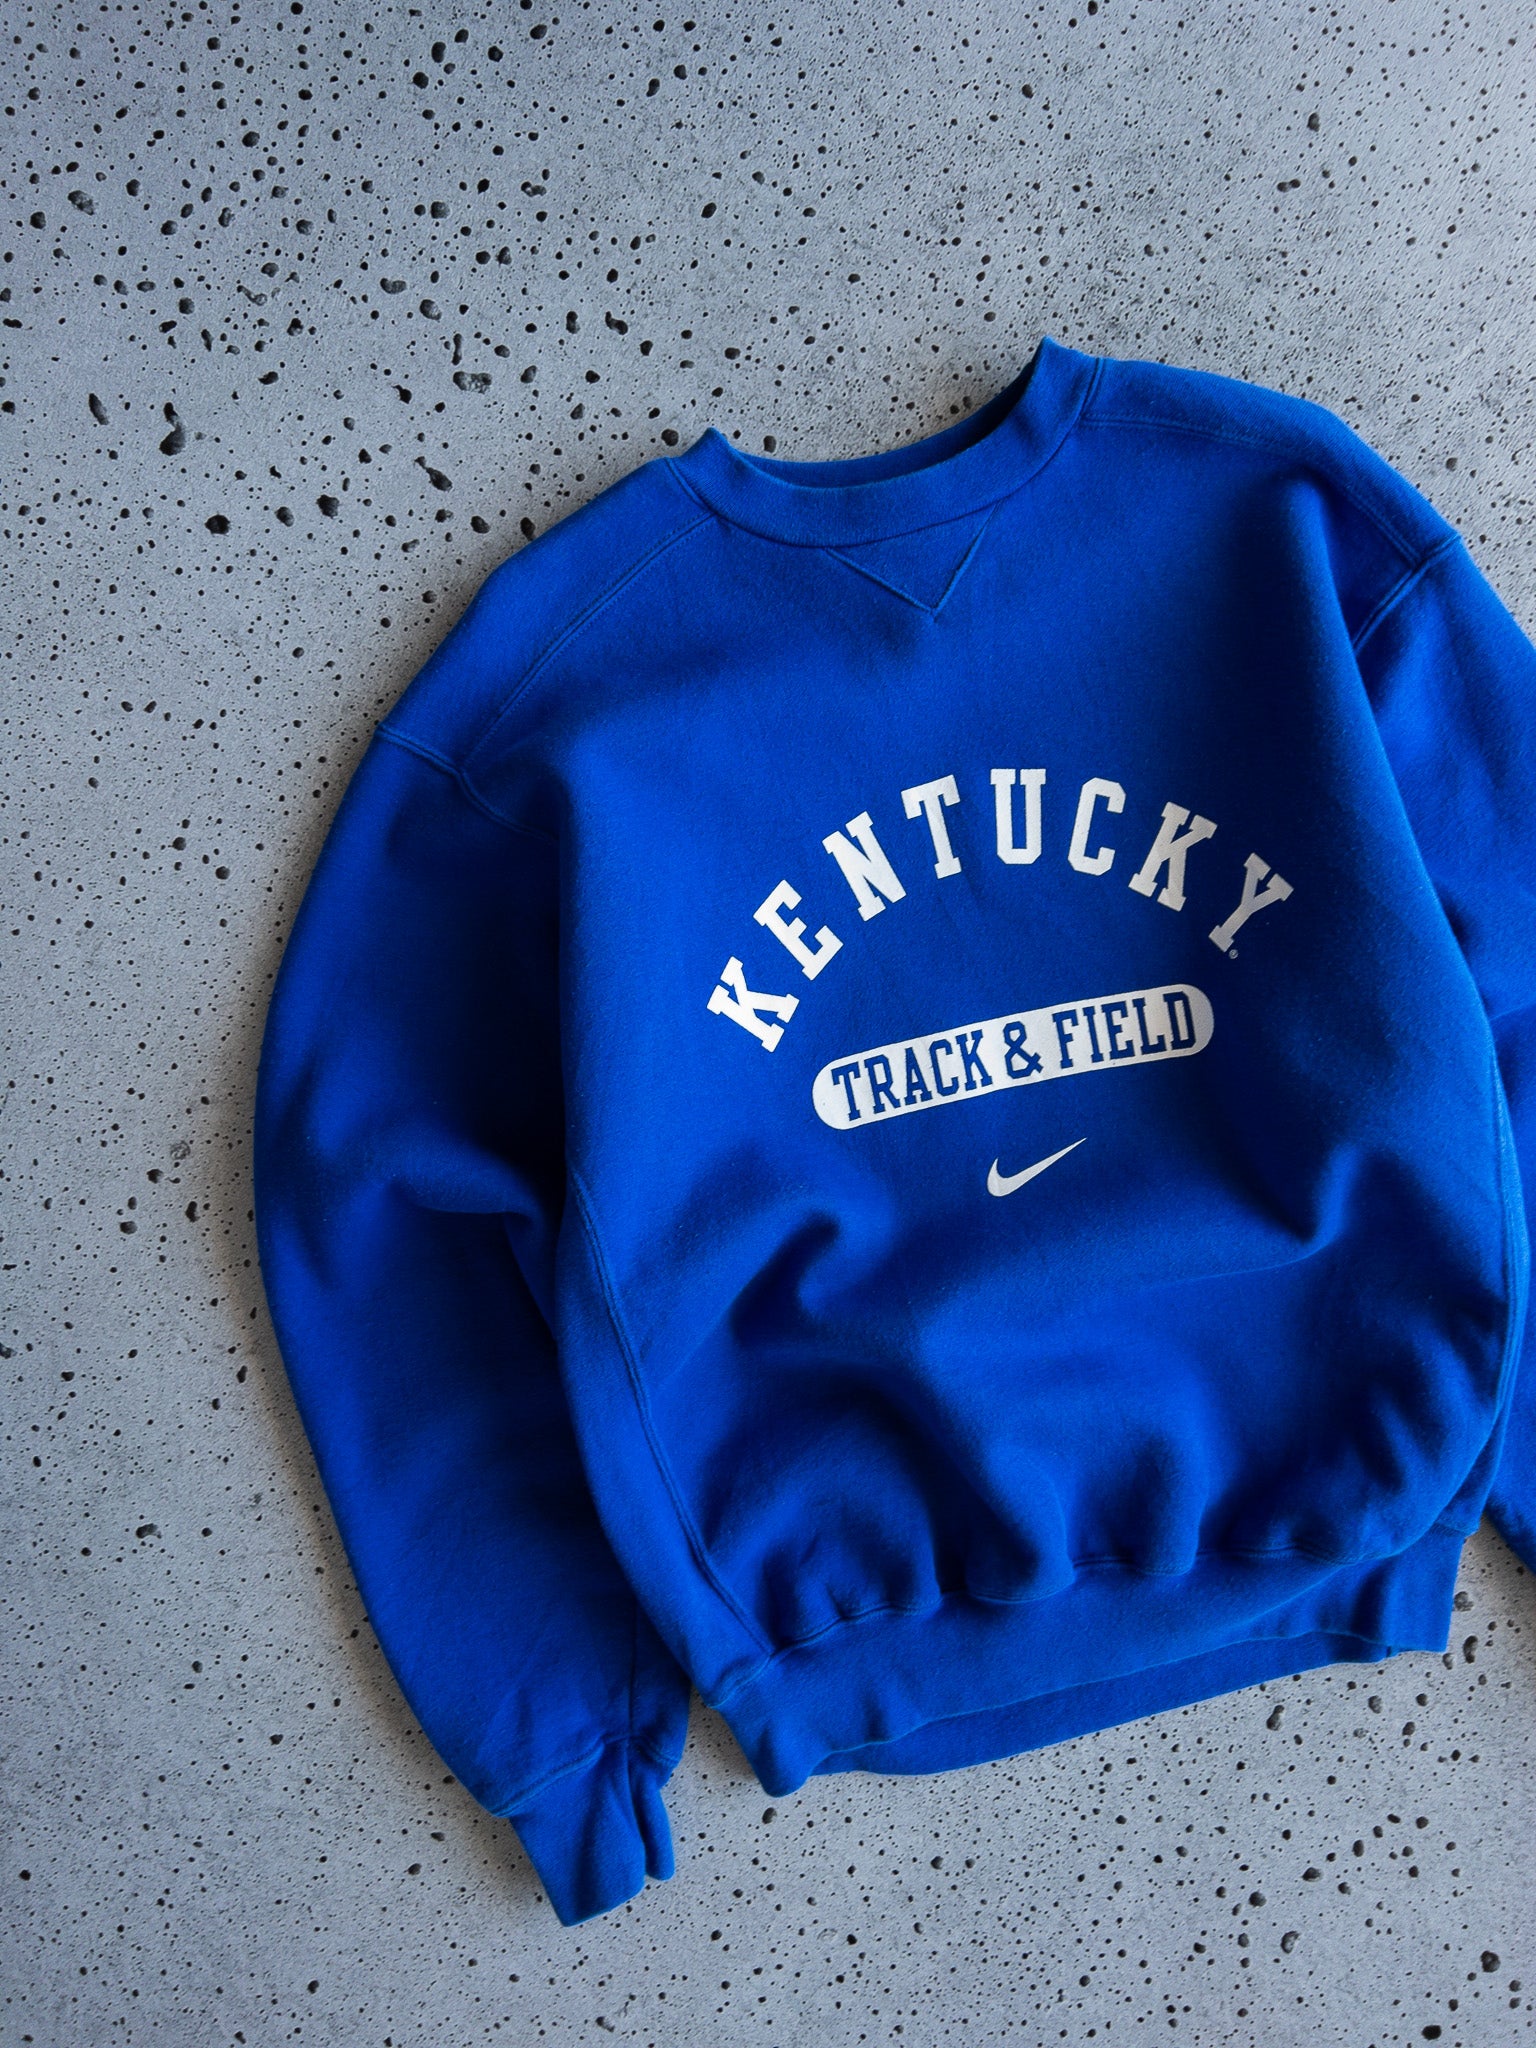 Vintage Kentucky Track & Field Nike Sweatshirt (S)